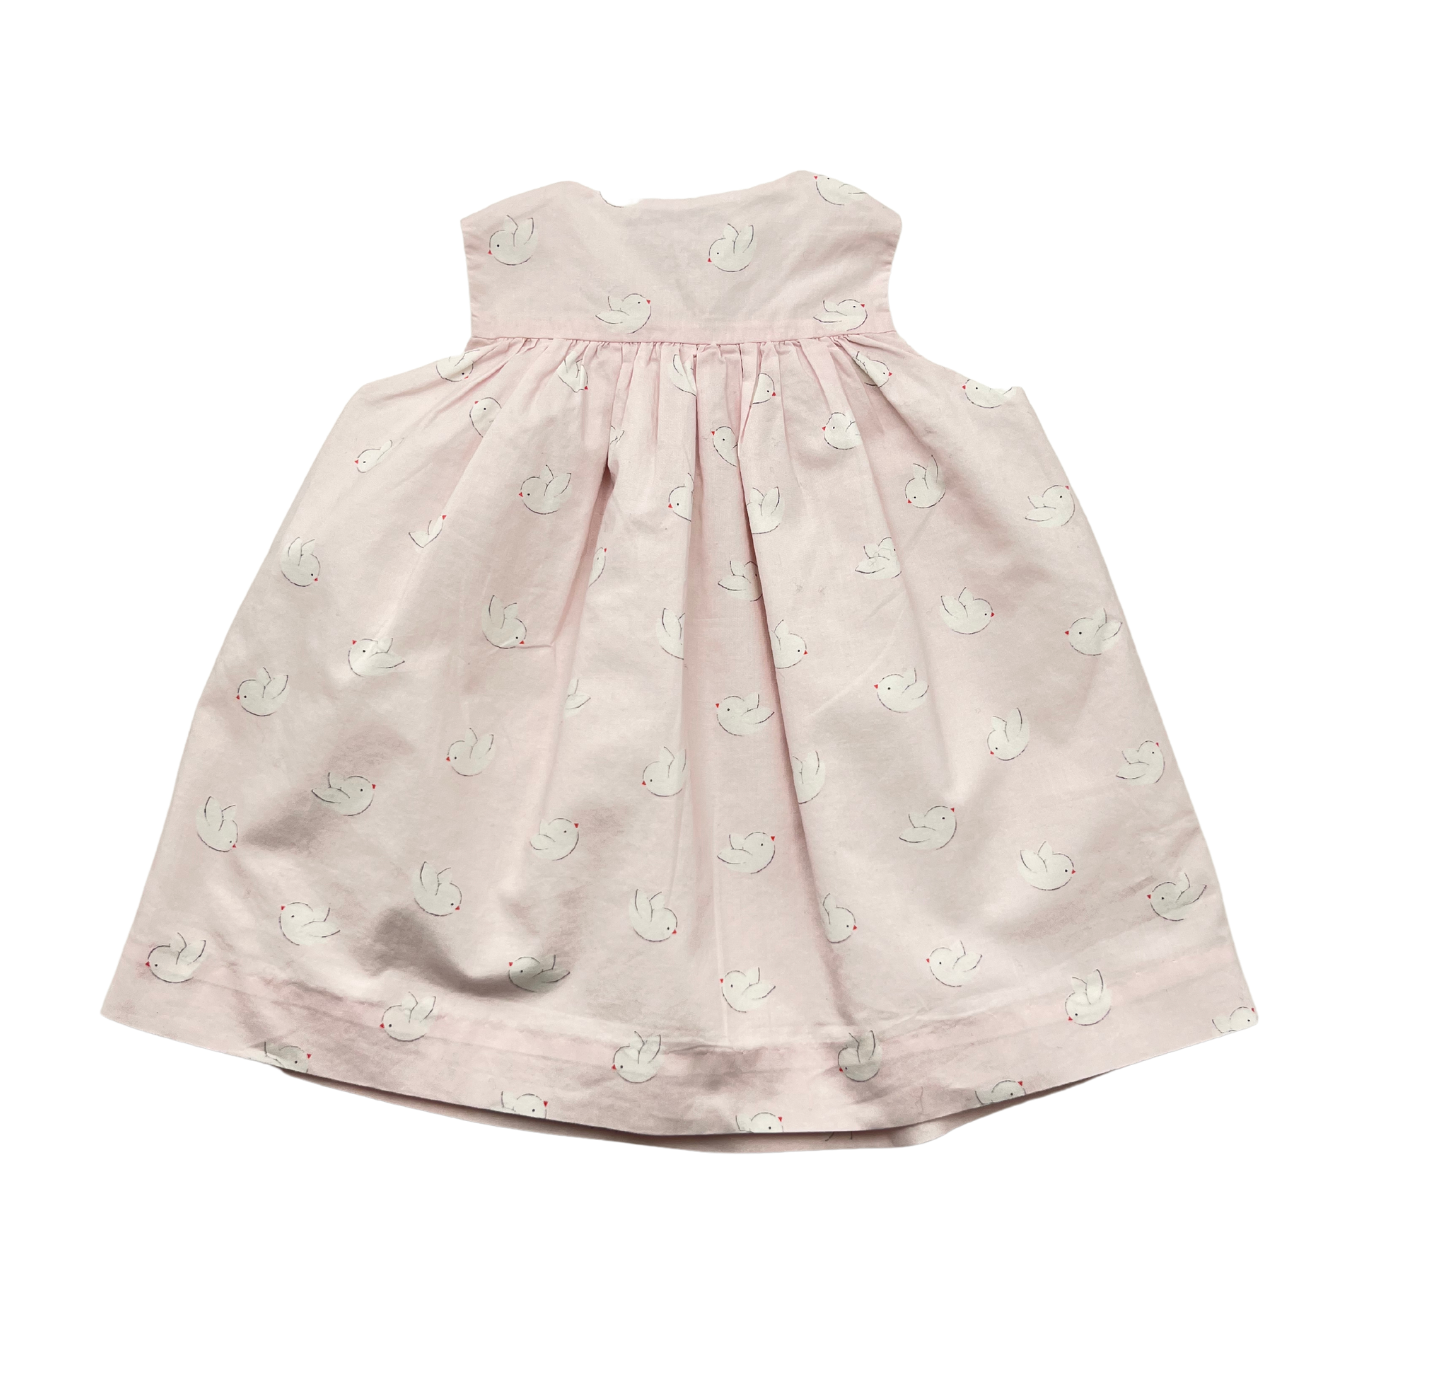 JACADI - Pink dress &amp; shorts set - 6 months